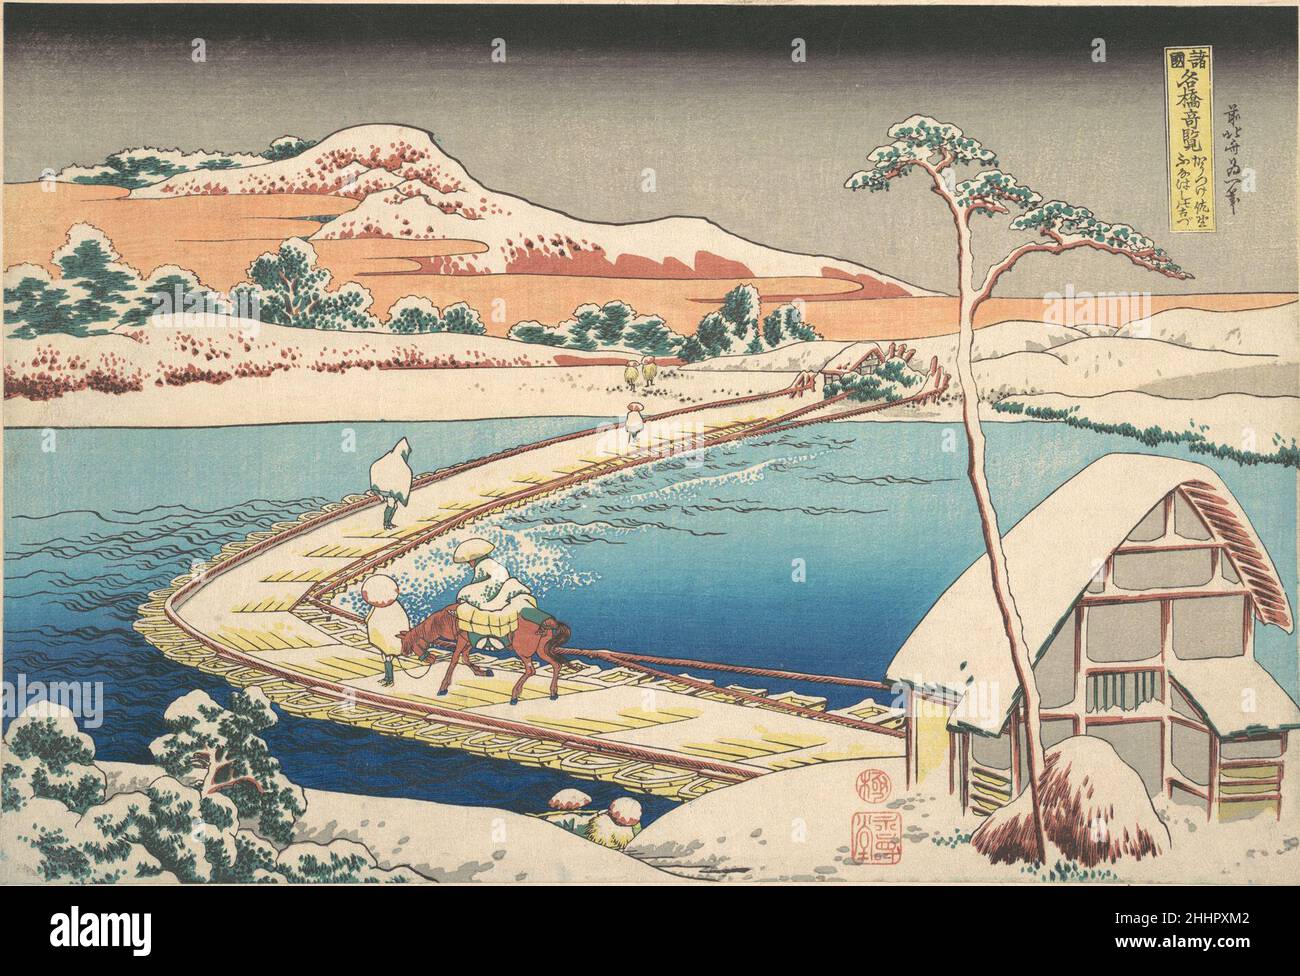 Vista antica del Boat-bridge a Sano nella provincia di K?zuke (K?zuke sano funabashi no kozu), dalla serie notevoli vedute dei ponti in varie province (Shokoku meiky? kiran) ca. 1830 Katsushika Hokusai Japanese questo paesaggio di neve raffigurante il "ponte delle barche" a Sano, Prefettura di Gunma, nel Giappone nord-orientale, è la stampa più suggestiva della serie. Noto nella cartouche come "vista antica", il ponte del pontone era famoso nella poesia iniziale ma non esisteva più ai tempi di Hokusai. La stampa presenta una composizione geometrica con una curva in grassetto verso il centro, evidenziando il potenziale pericolo di Foto Stock